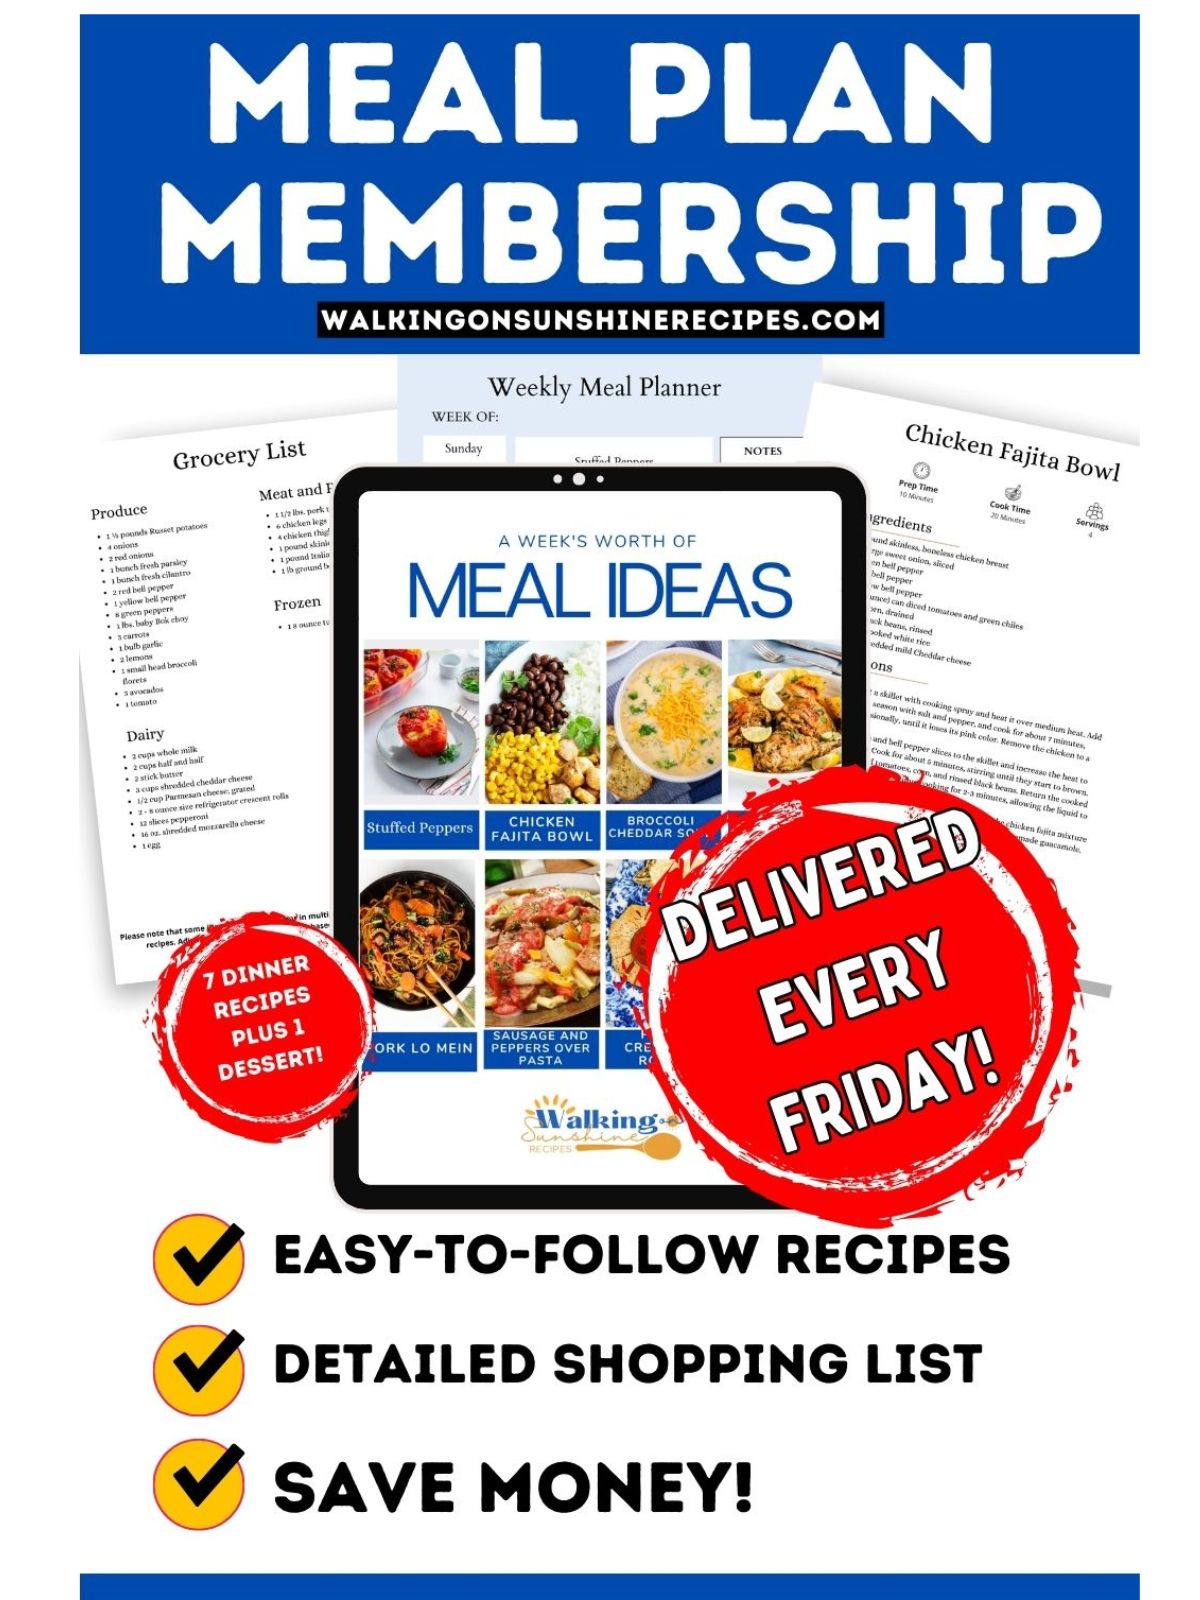 meal plan membership promo photo.